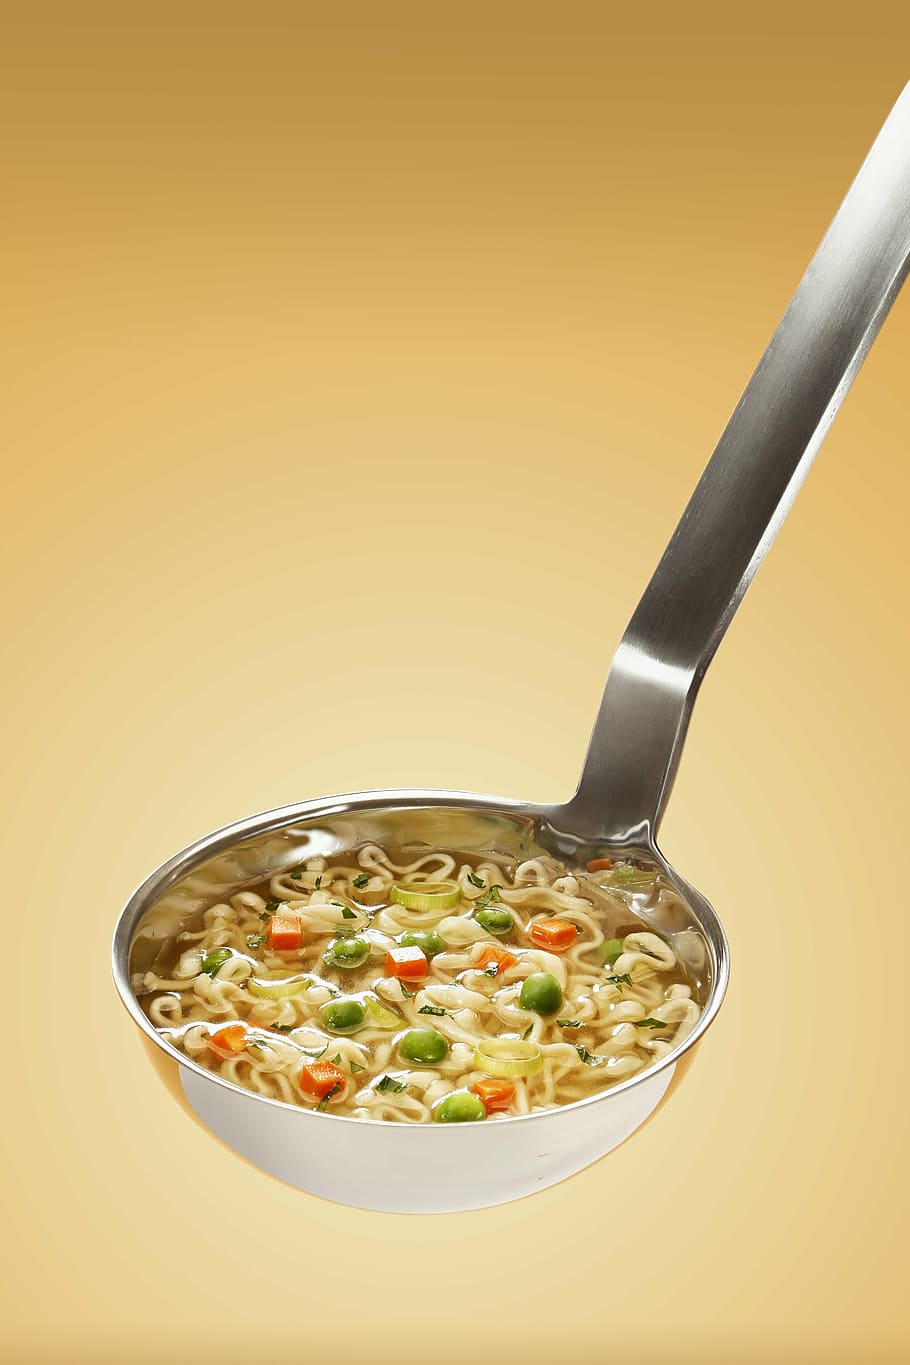 スプーンの麺, おいしい, 食品, 健康, お玉, 食事, 麺, スープ, 野菜, 食べ物と飲み物